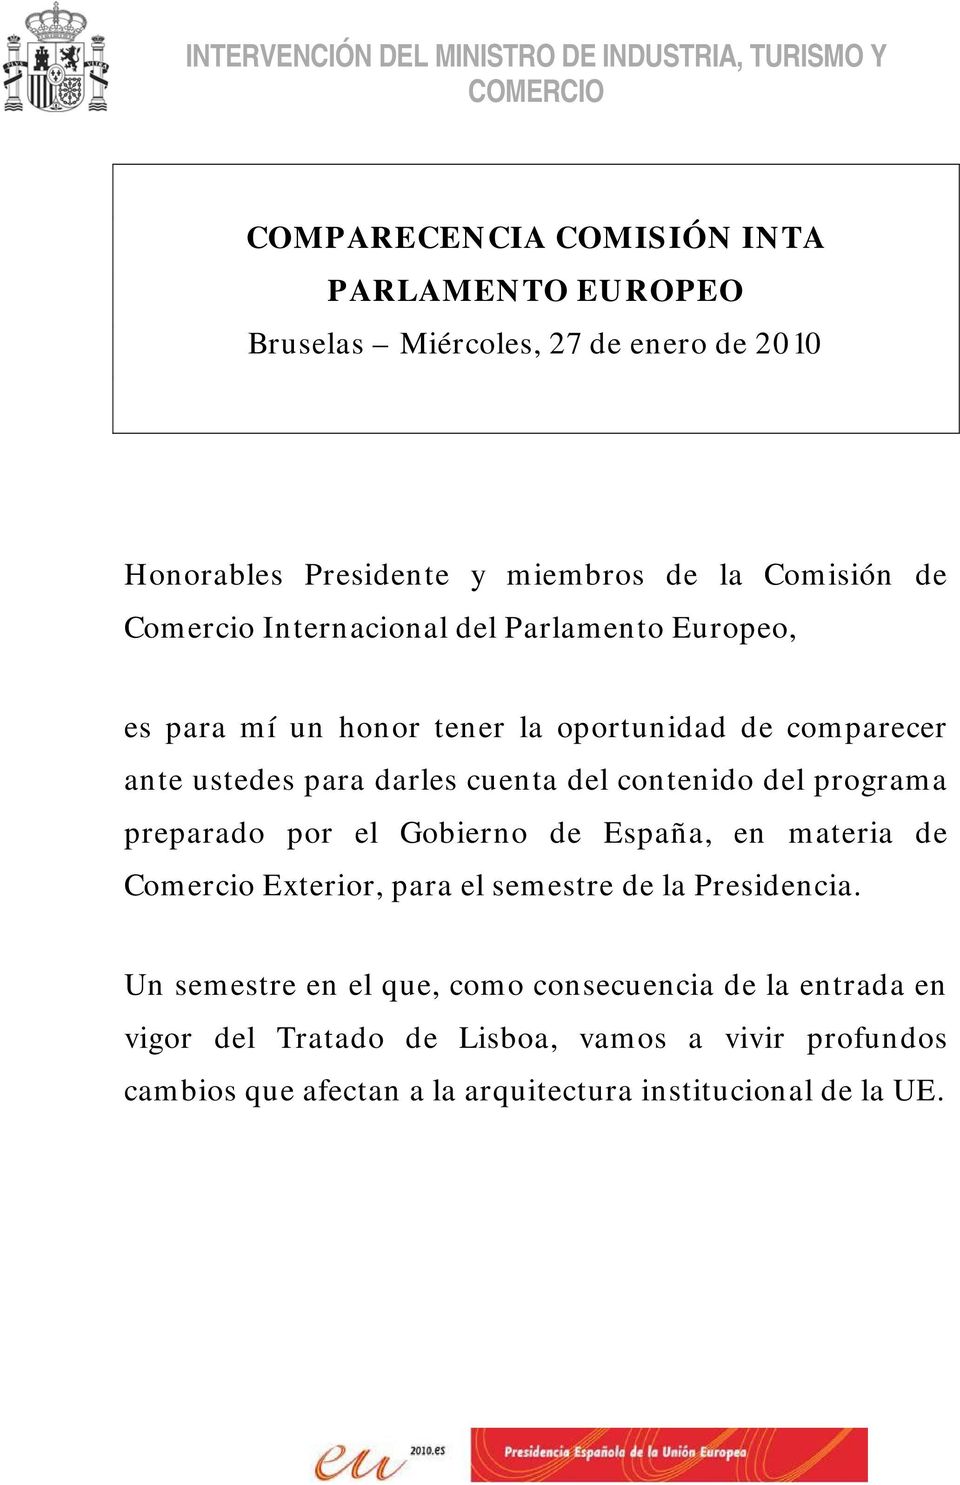 para darles cuenta del contenido del programa preparado por el Gobierno de España, en materia de Comercio Exterior, para el semestre de la Presidencia.